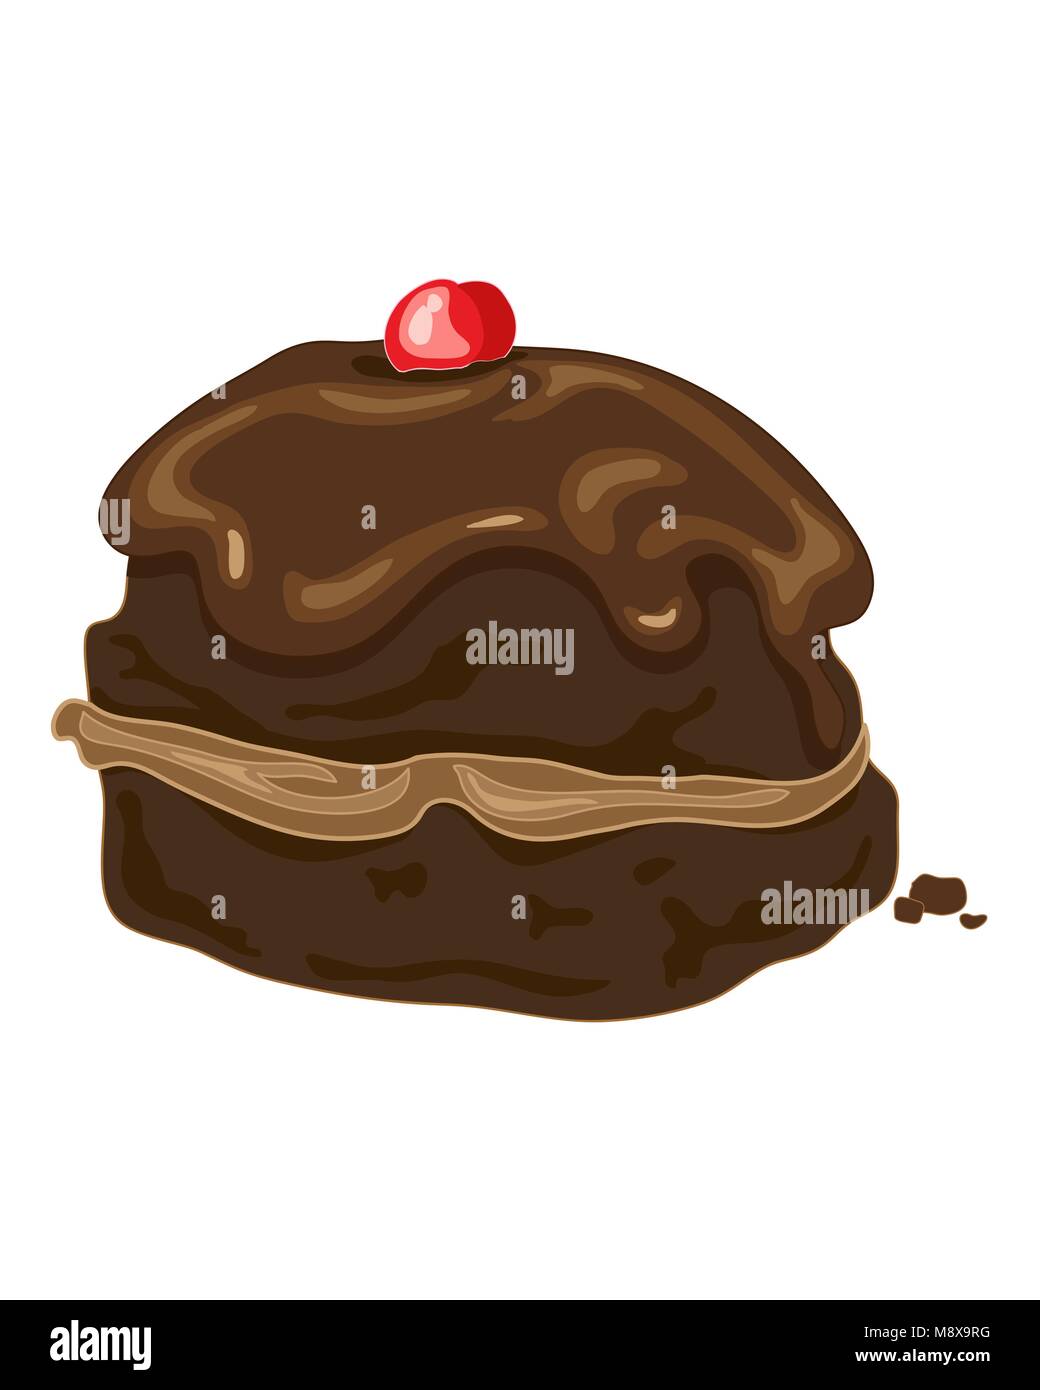 Un vecteur illustration au format eps d'une fantaisie Chocolat glacé au chocolat brioche à la crème et une glace cherry comme décoration sur un fond blanc Illustration de Vecteur